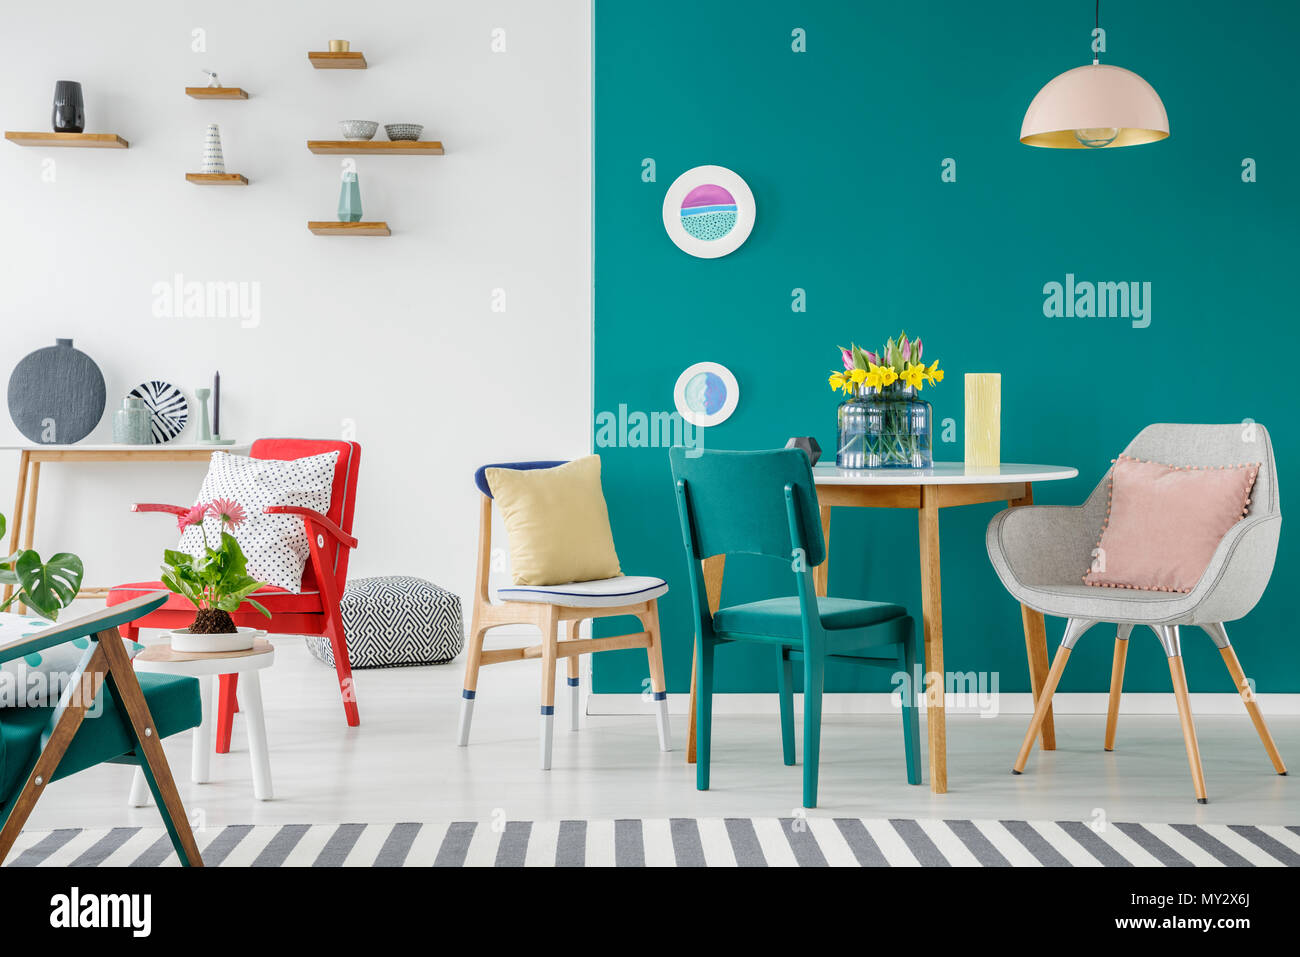 Stühle an den hölzernen Tisch gegen grüne Wand in bunten Wohnung Interieur mit Blumen Stockfoto